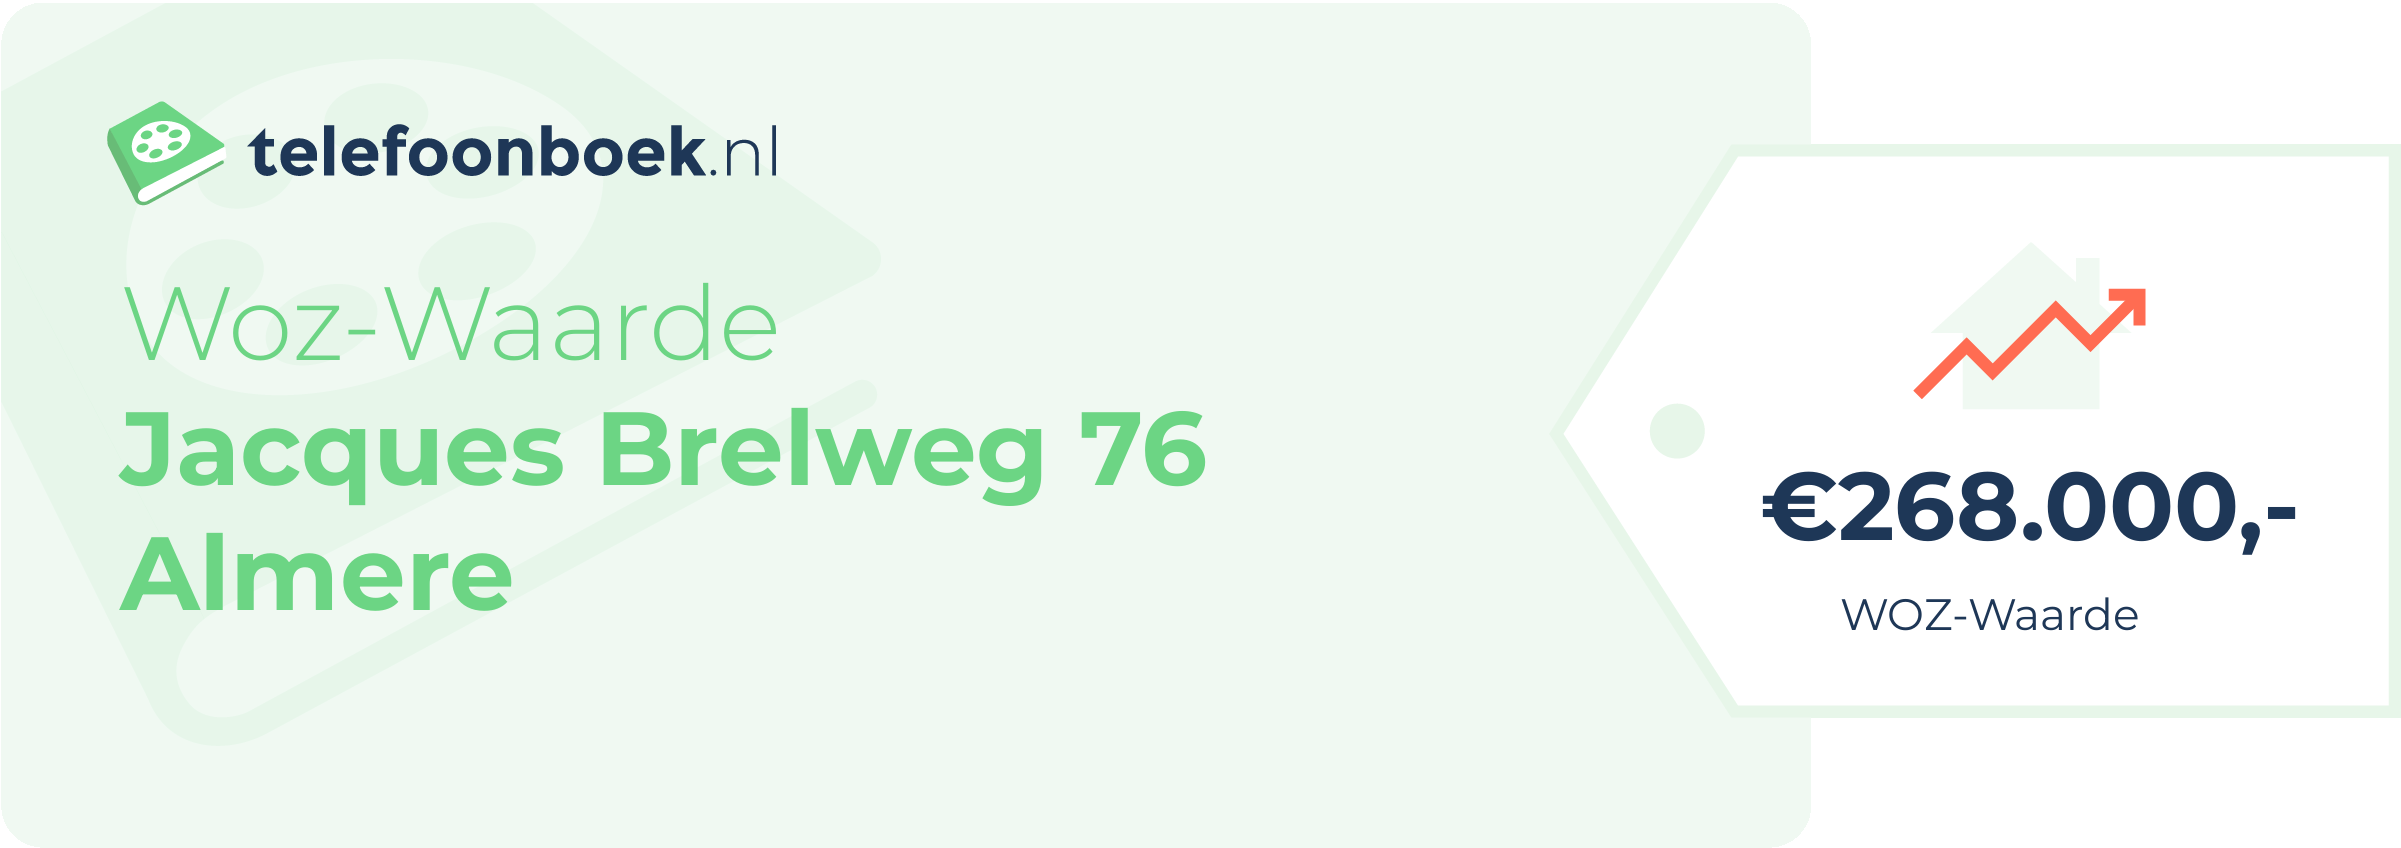 WOZ-waarde Jacques Brelweg 76 Almere